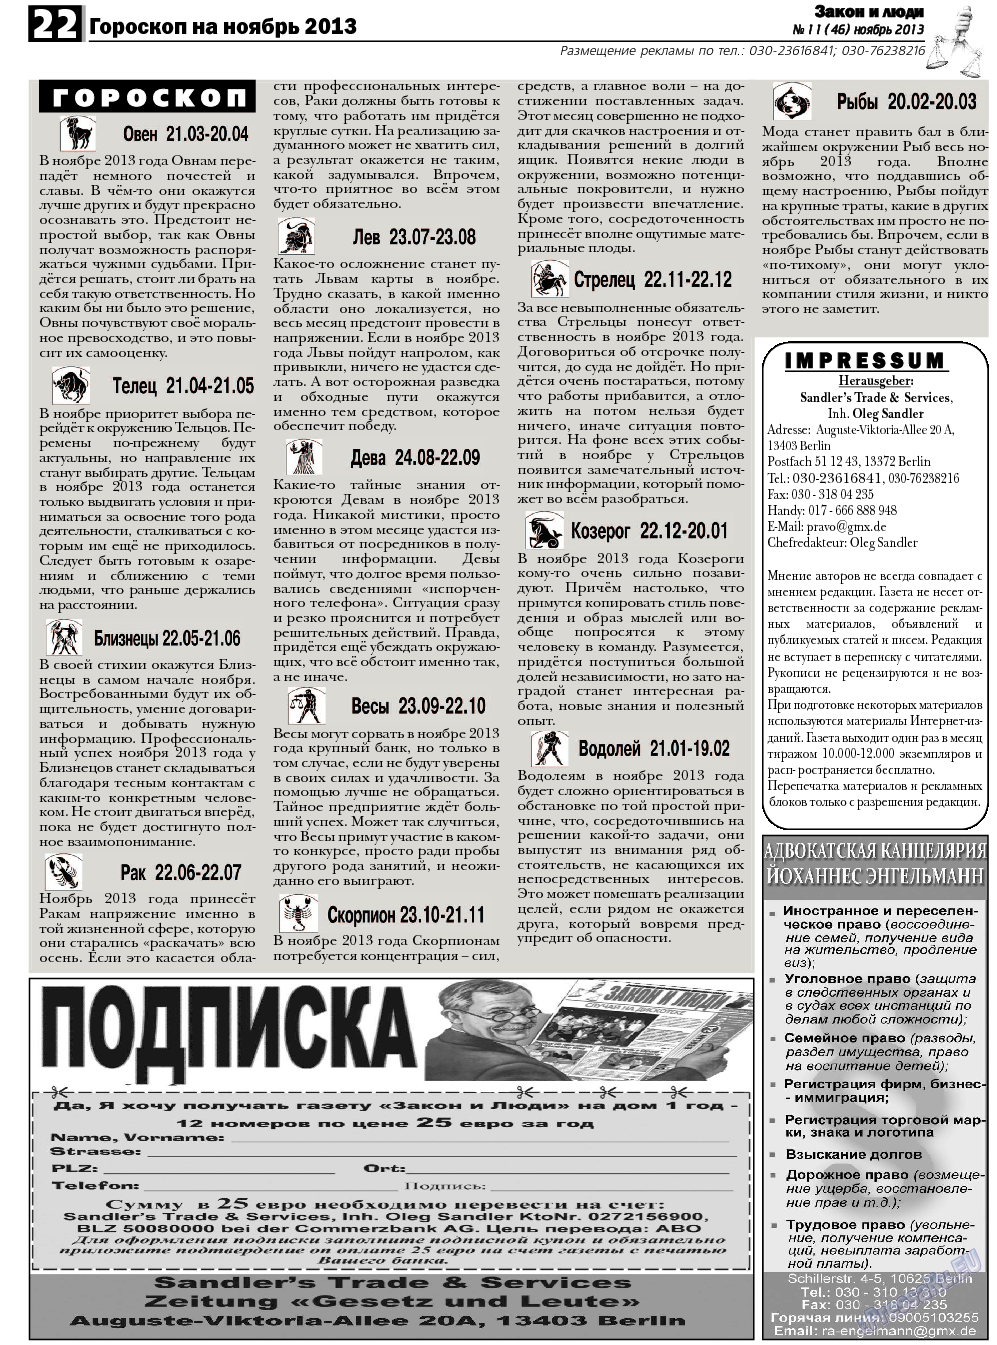 Закон и люди, газета. 2013 №11 стр.22